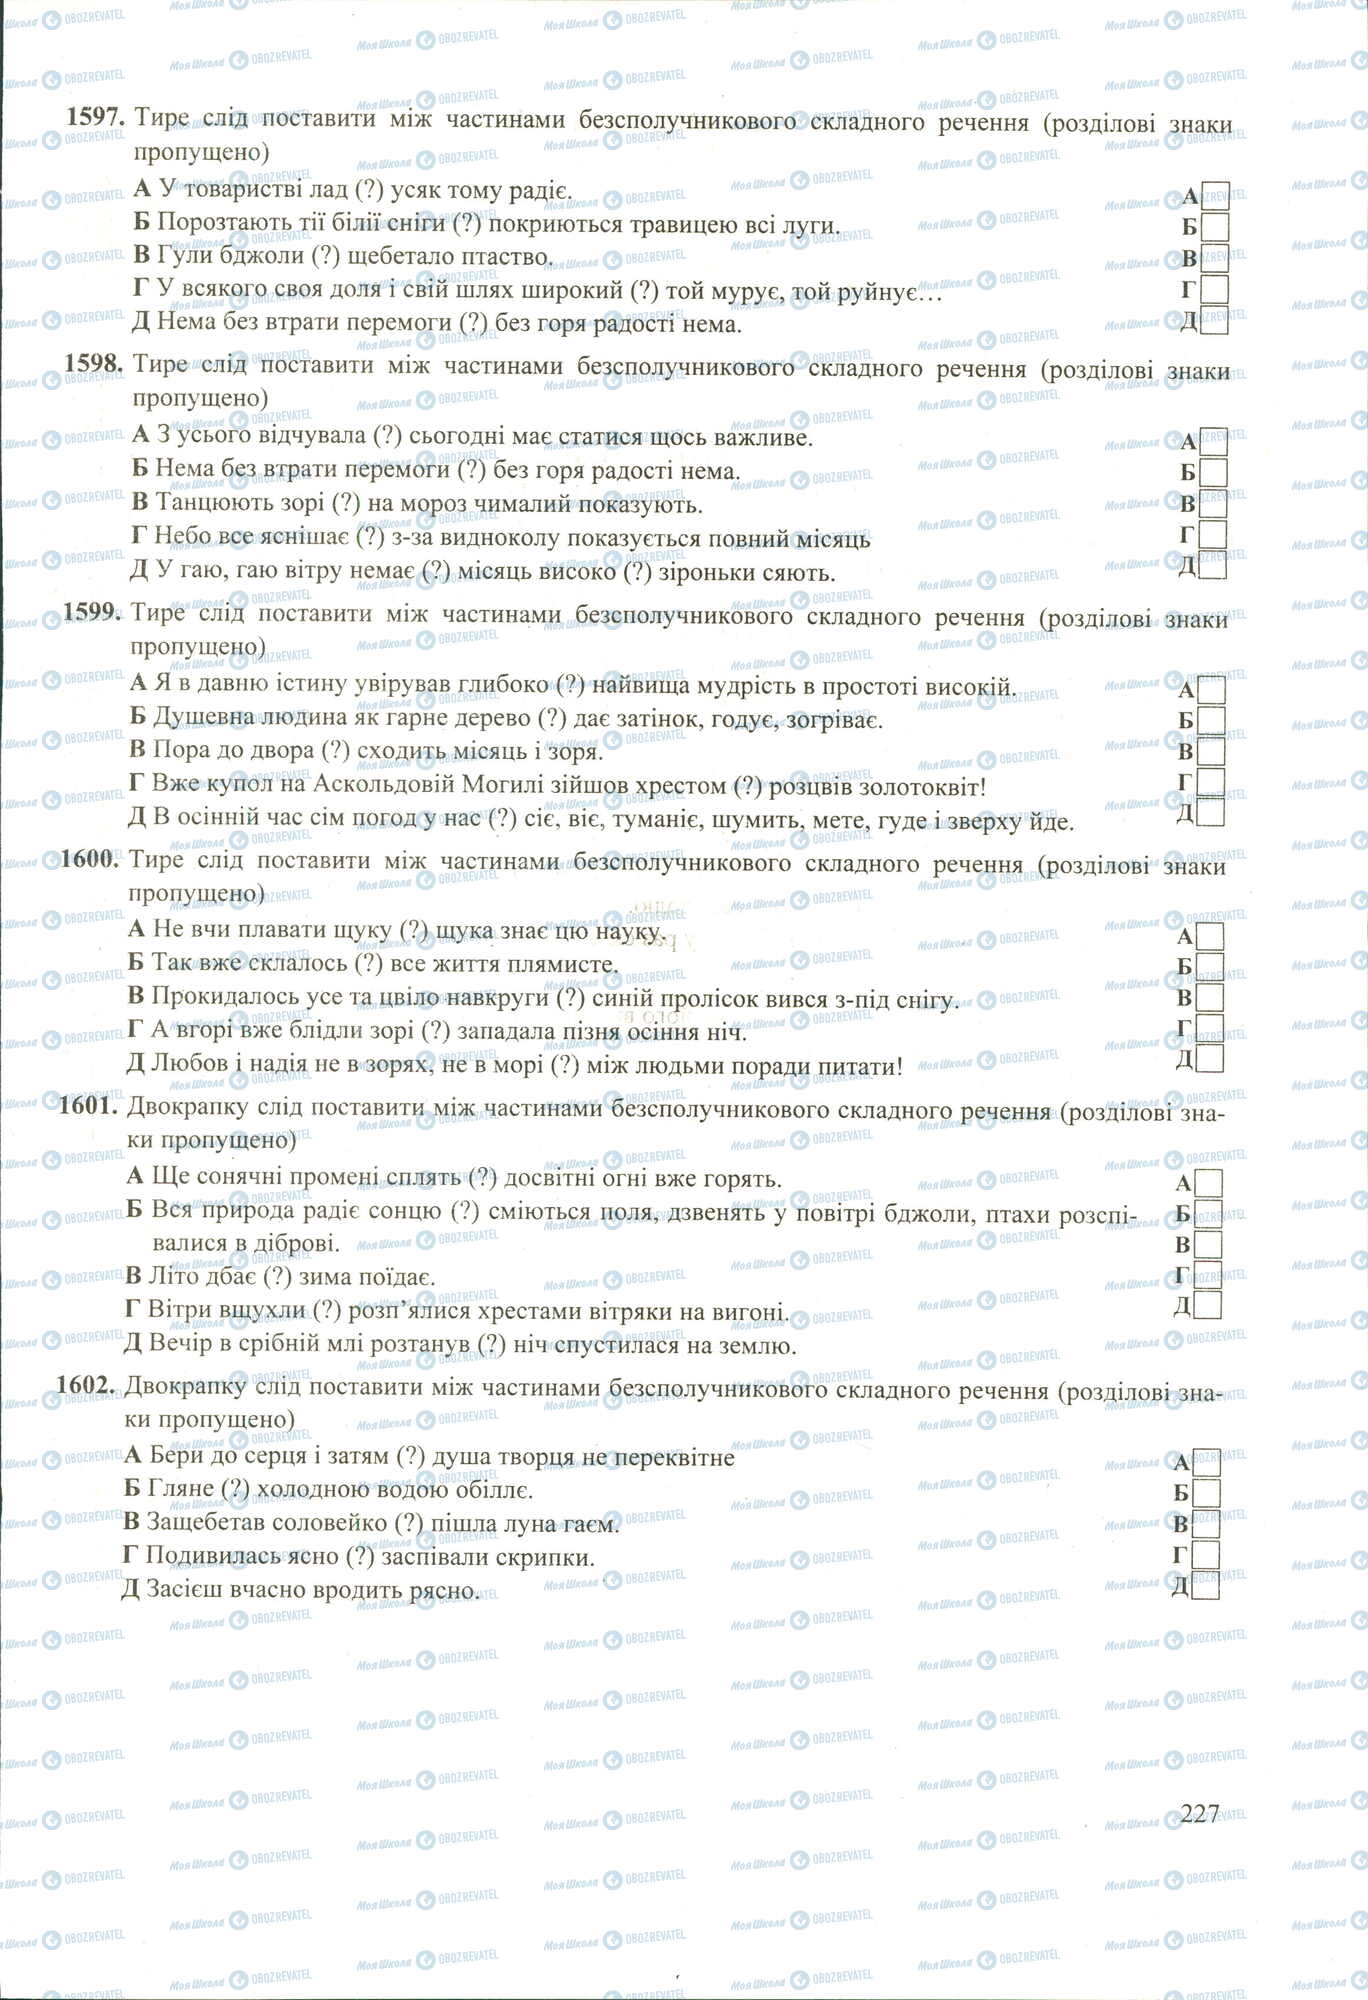 ЗНО Укр мова 11 класс страница 1597-1602